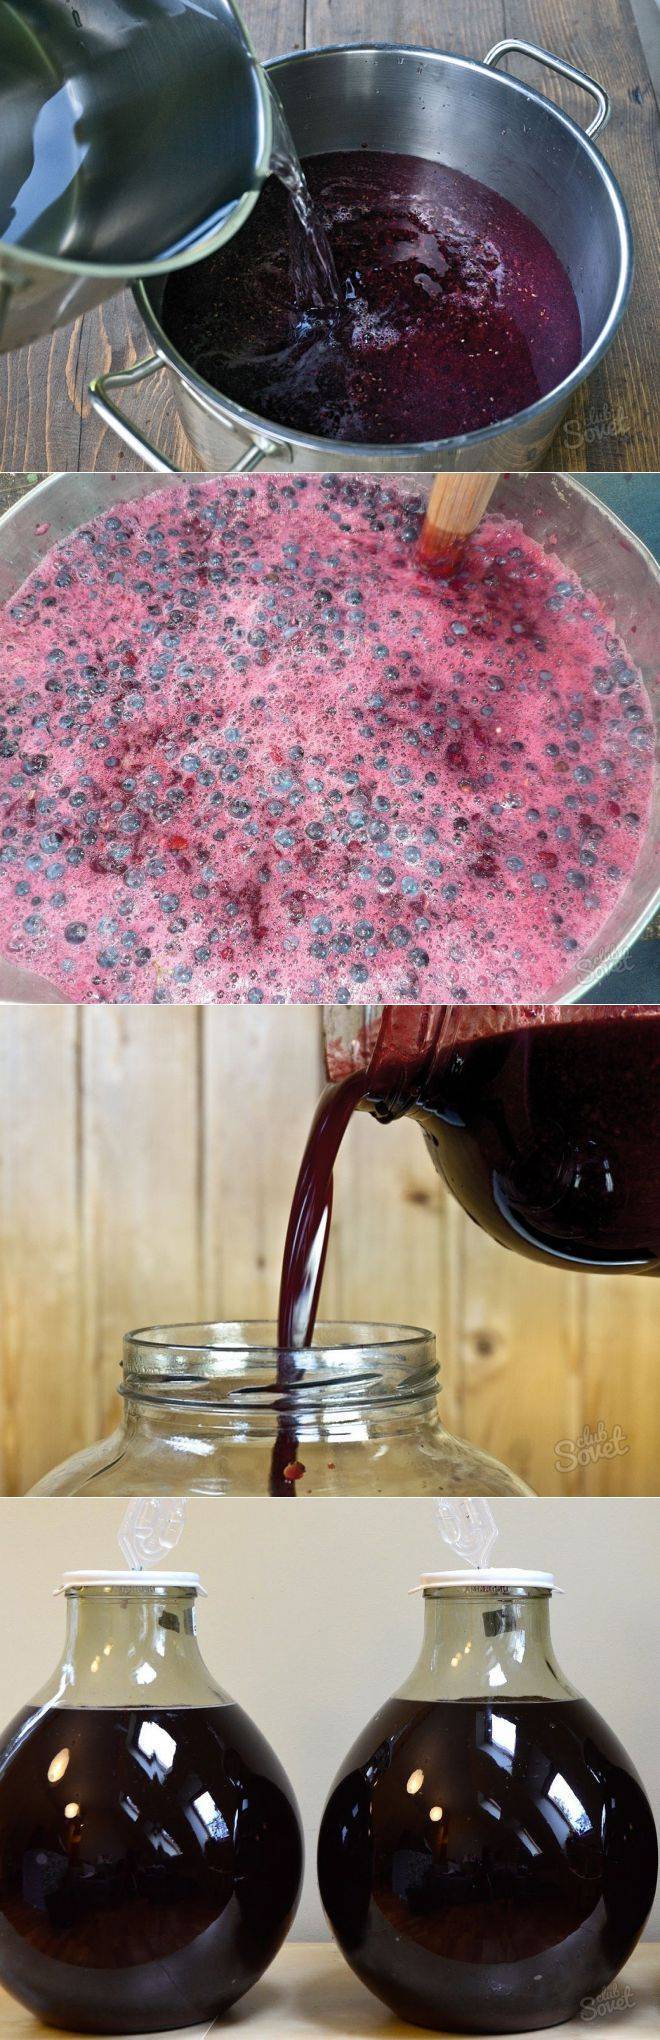 Как сделать вино из варенья в домашних условиях - простые рецепты